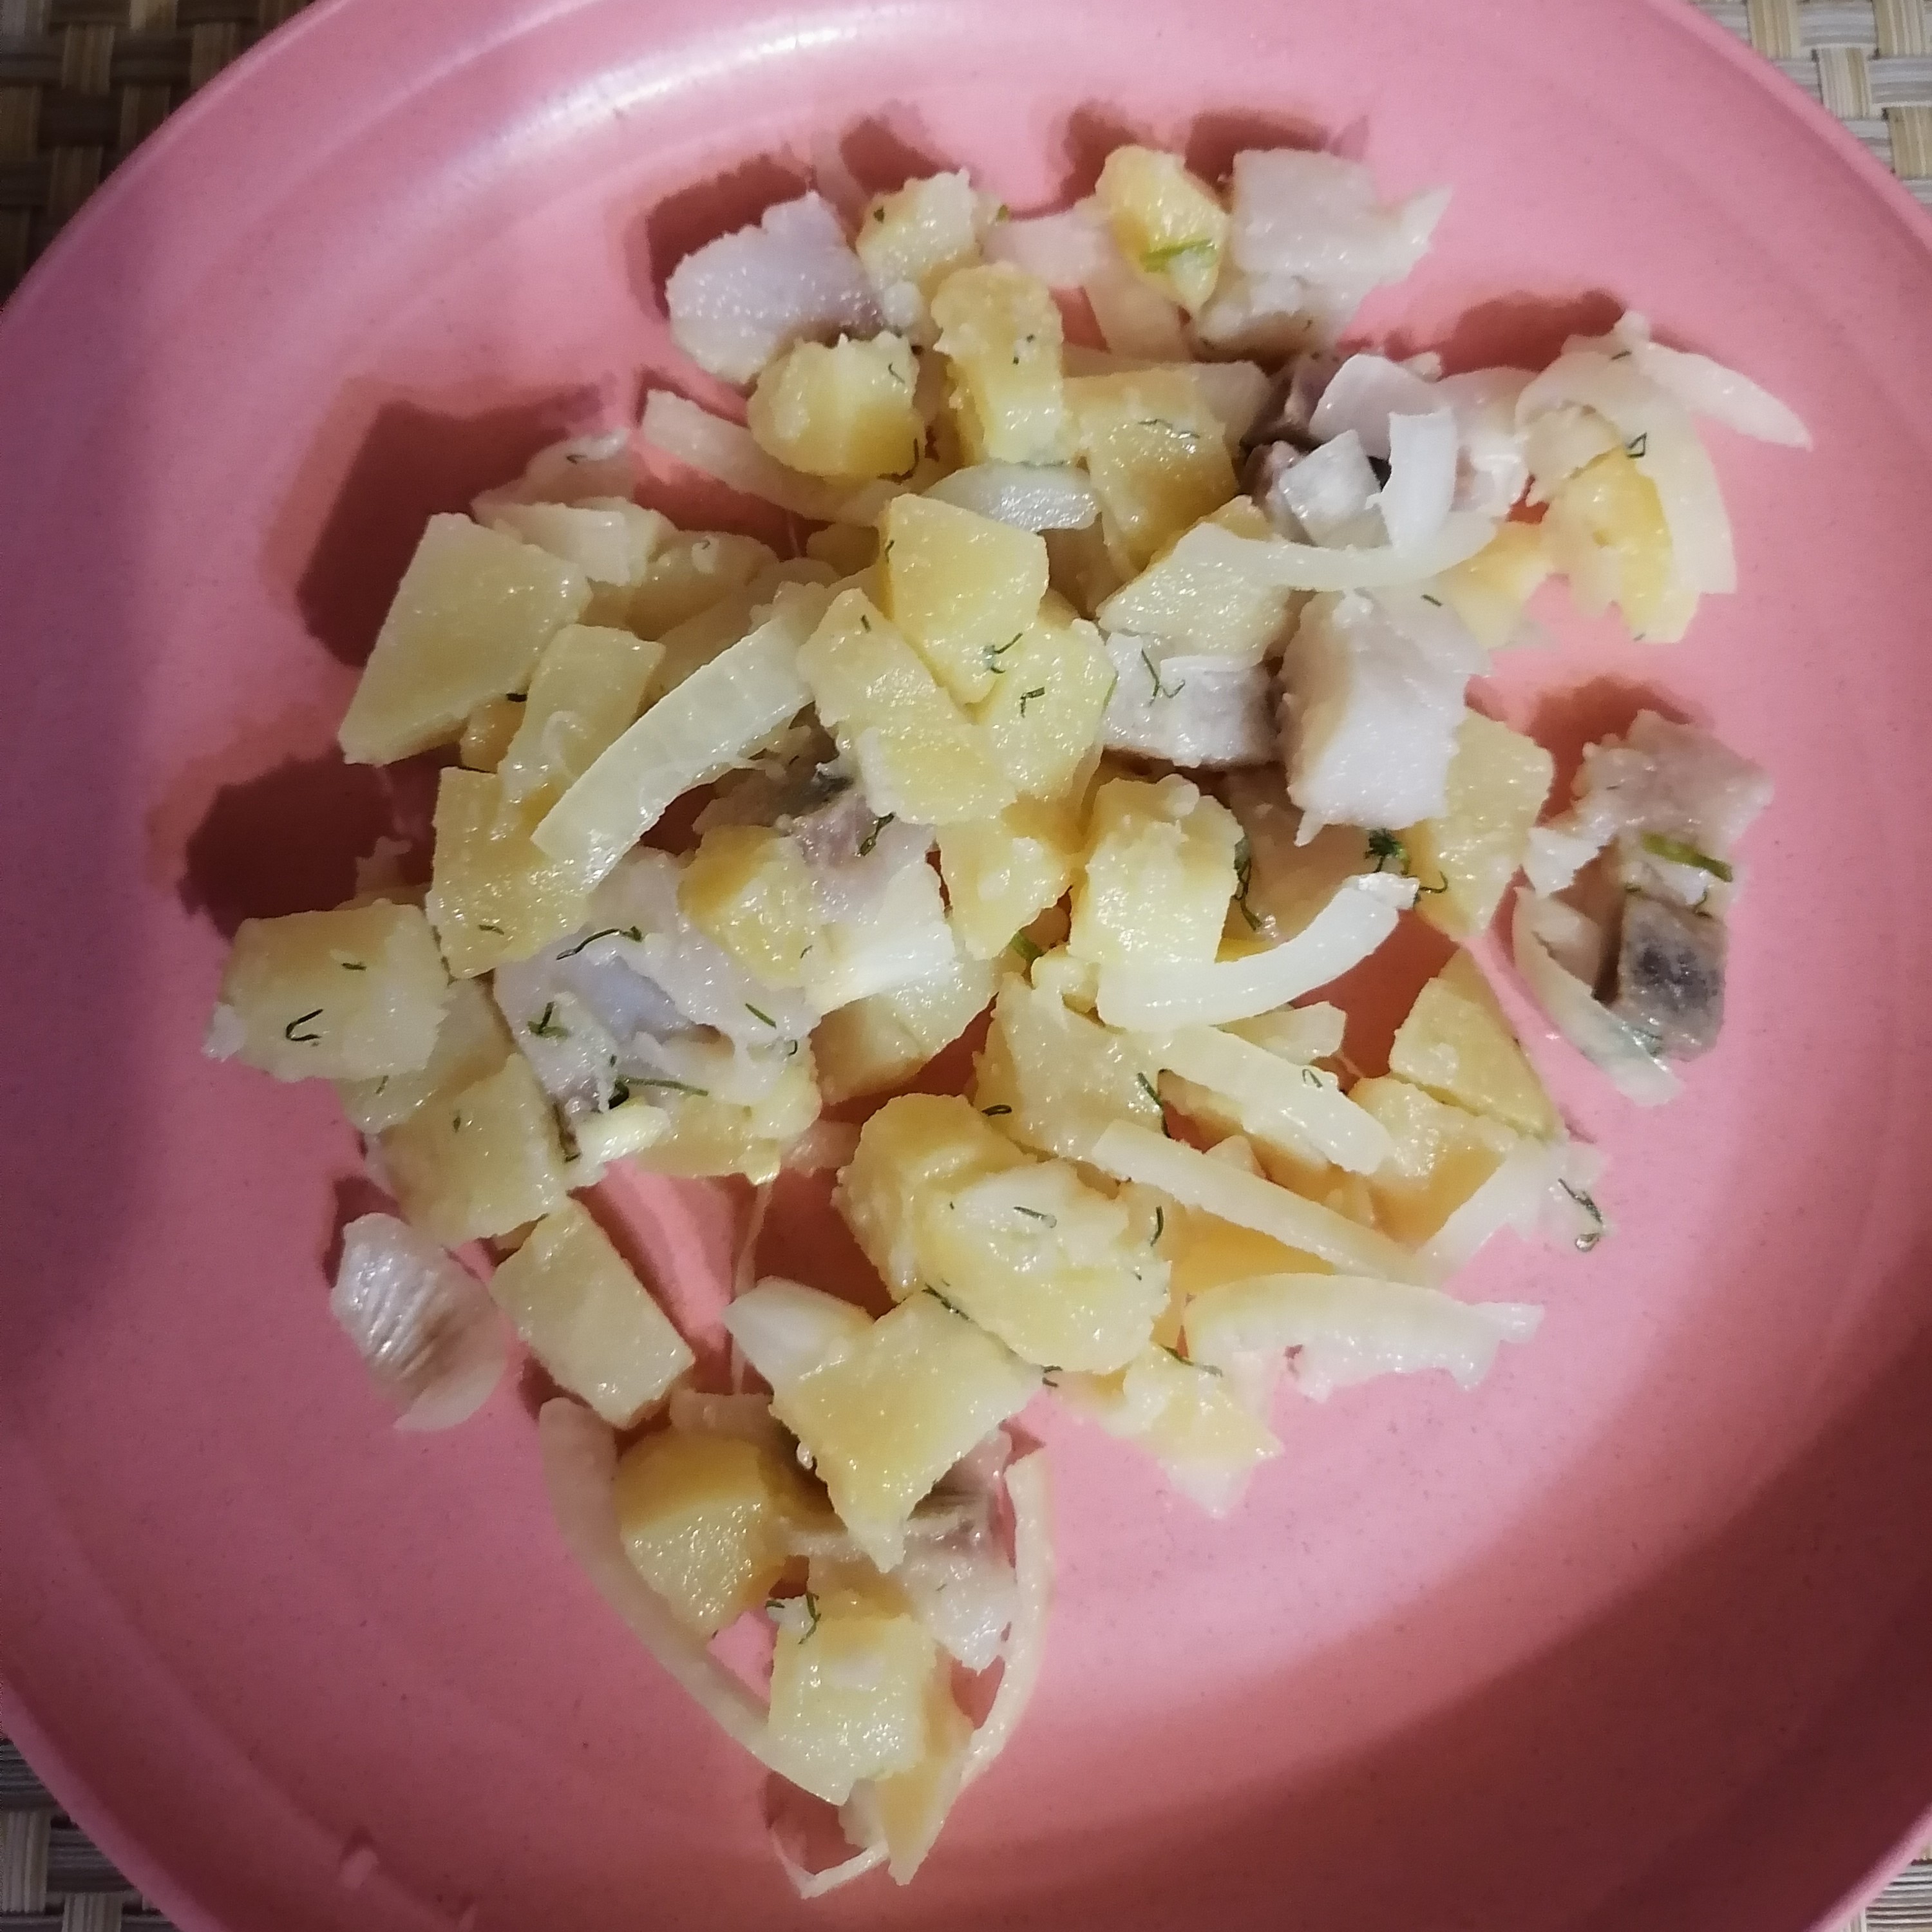 Салат из картофеля, сельди и красного лука